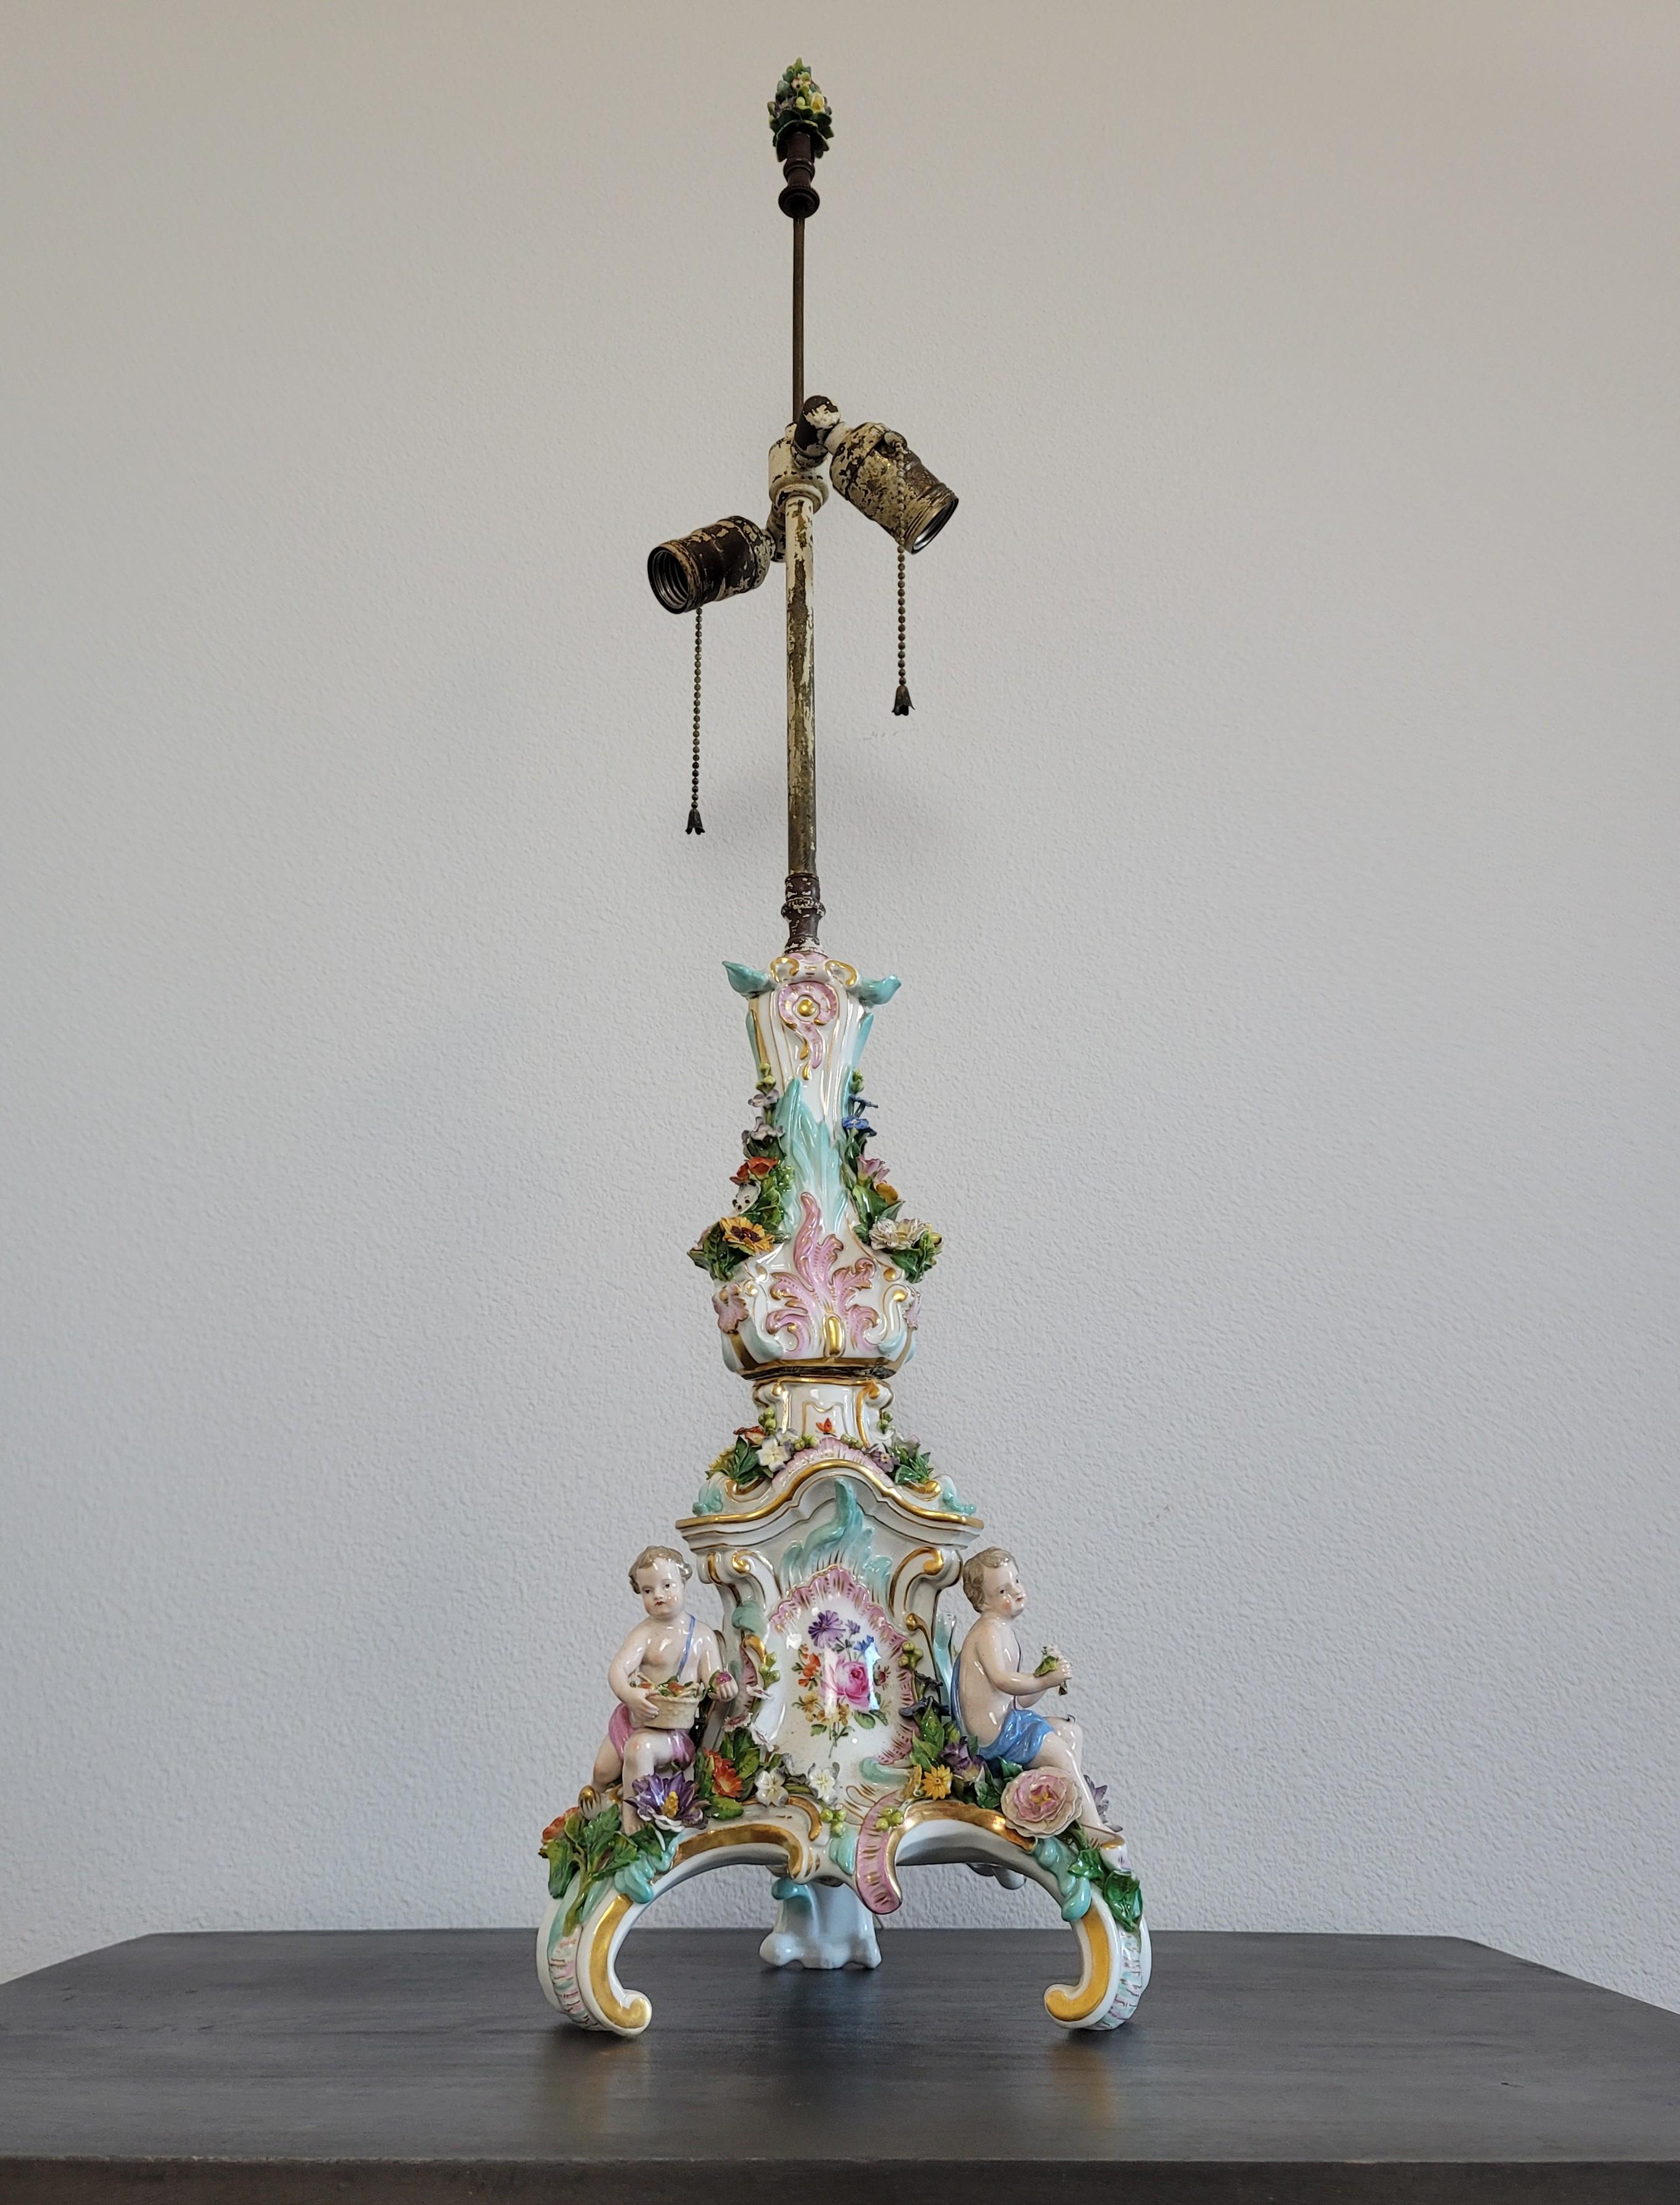 Eine atemberaubende antike, circa 1880er Jahre, Dresden Porzellan figuralen Blumen verkrustet Leuchter - Kandelaber als Lampe montiert. 

Exquisit handgefertigt und bemalt in Deutschland im späten 19. Jahrhundert, entwickelt von Ernst August